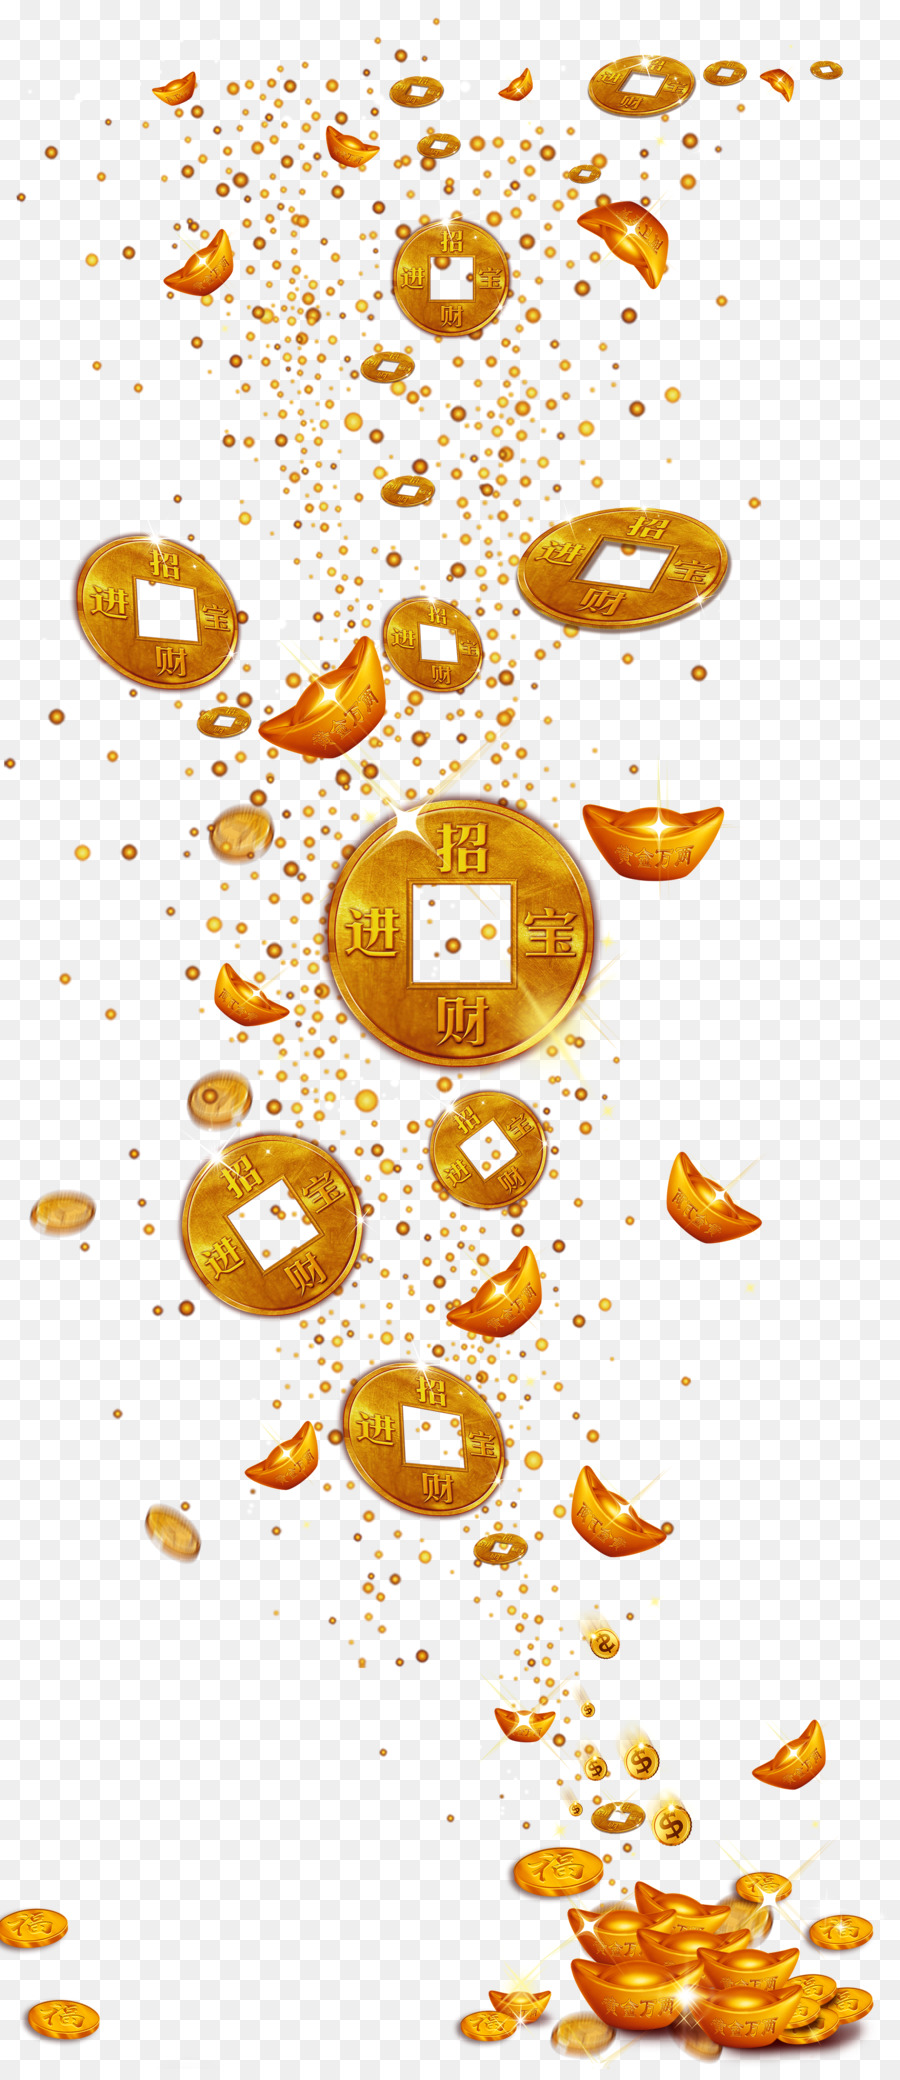 đồng tiền vàng - Vàng bầu không khí rơi tiền thỏi vàng liệu png tải về -  Miễn phí trong suốt điểm png Tải về.